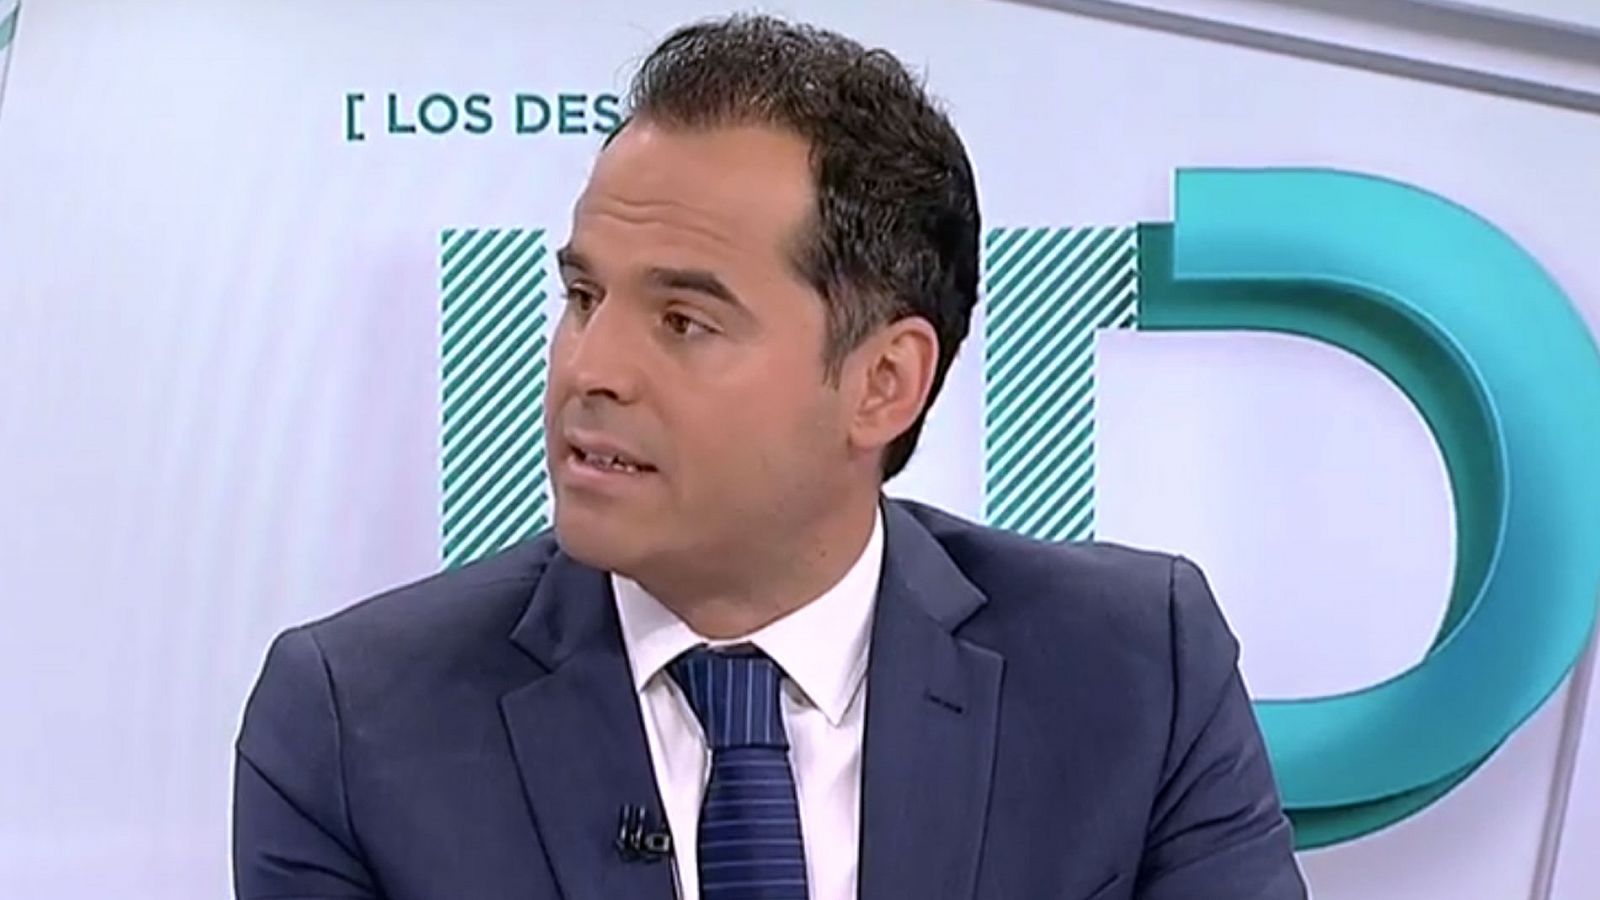 Ignacio Aguado, dispuesto a reunirse con Vox y a que firmen si quieren el acuerdo "cerrado" con el PP  - RTVE.es